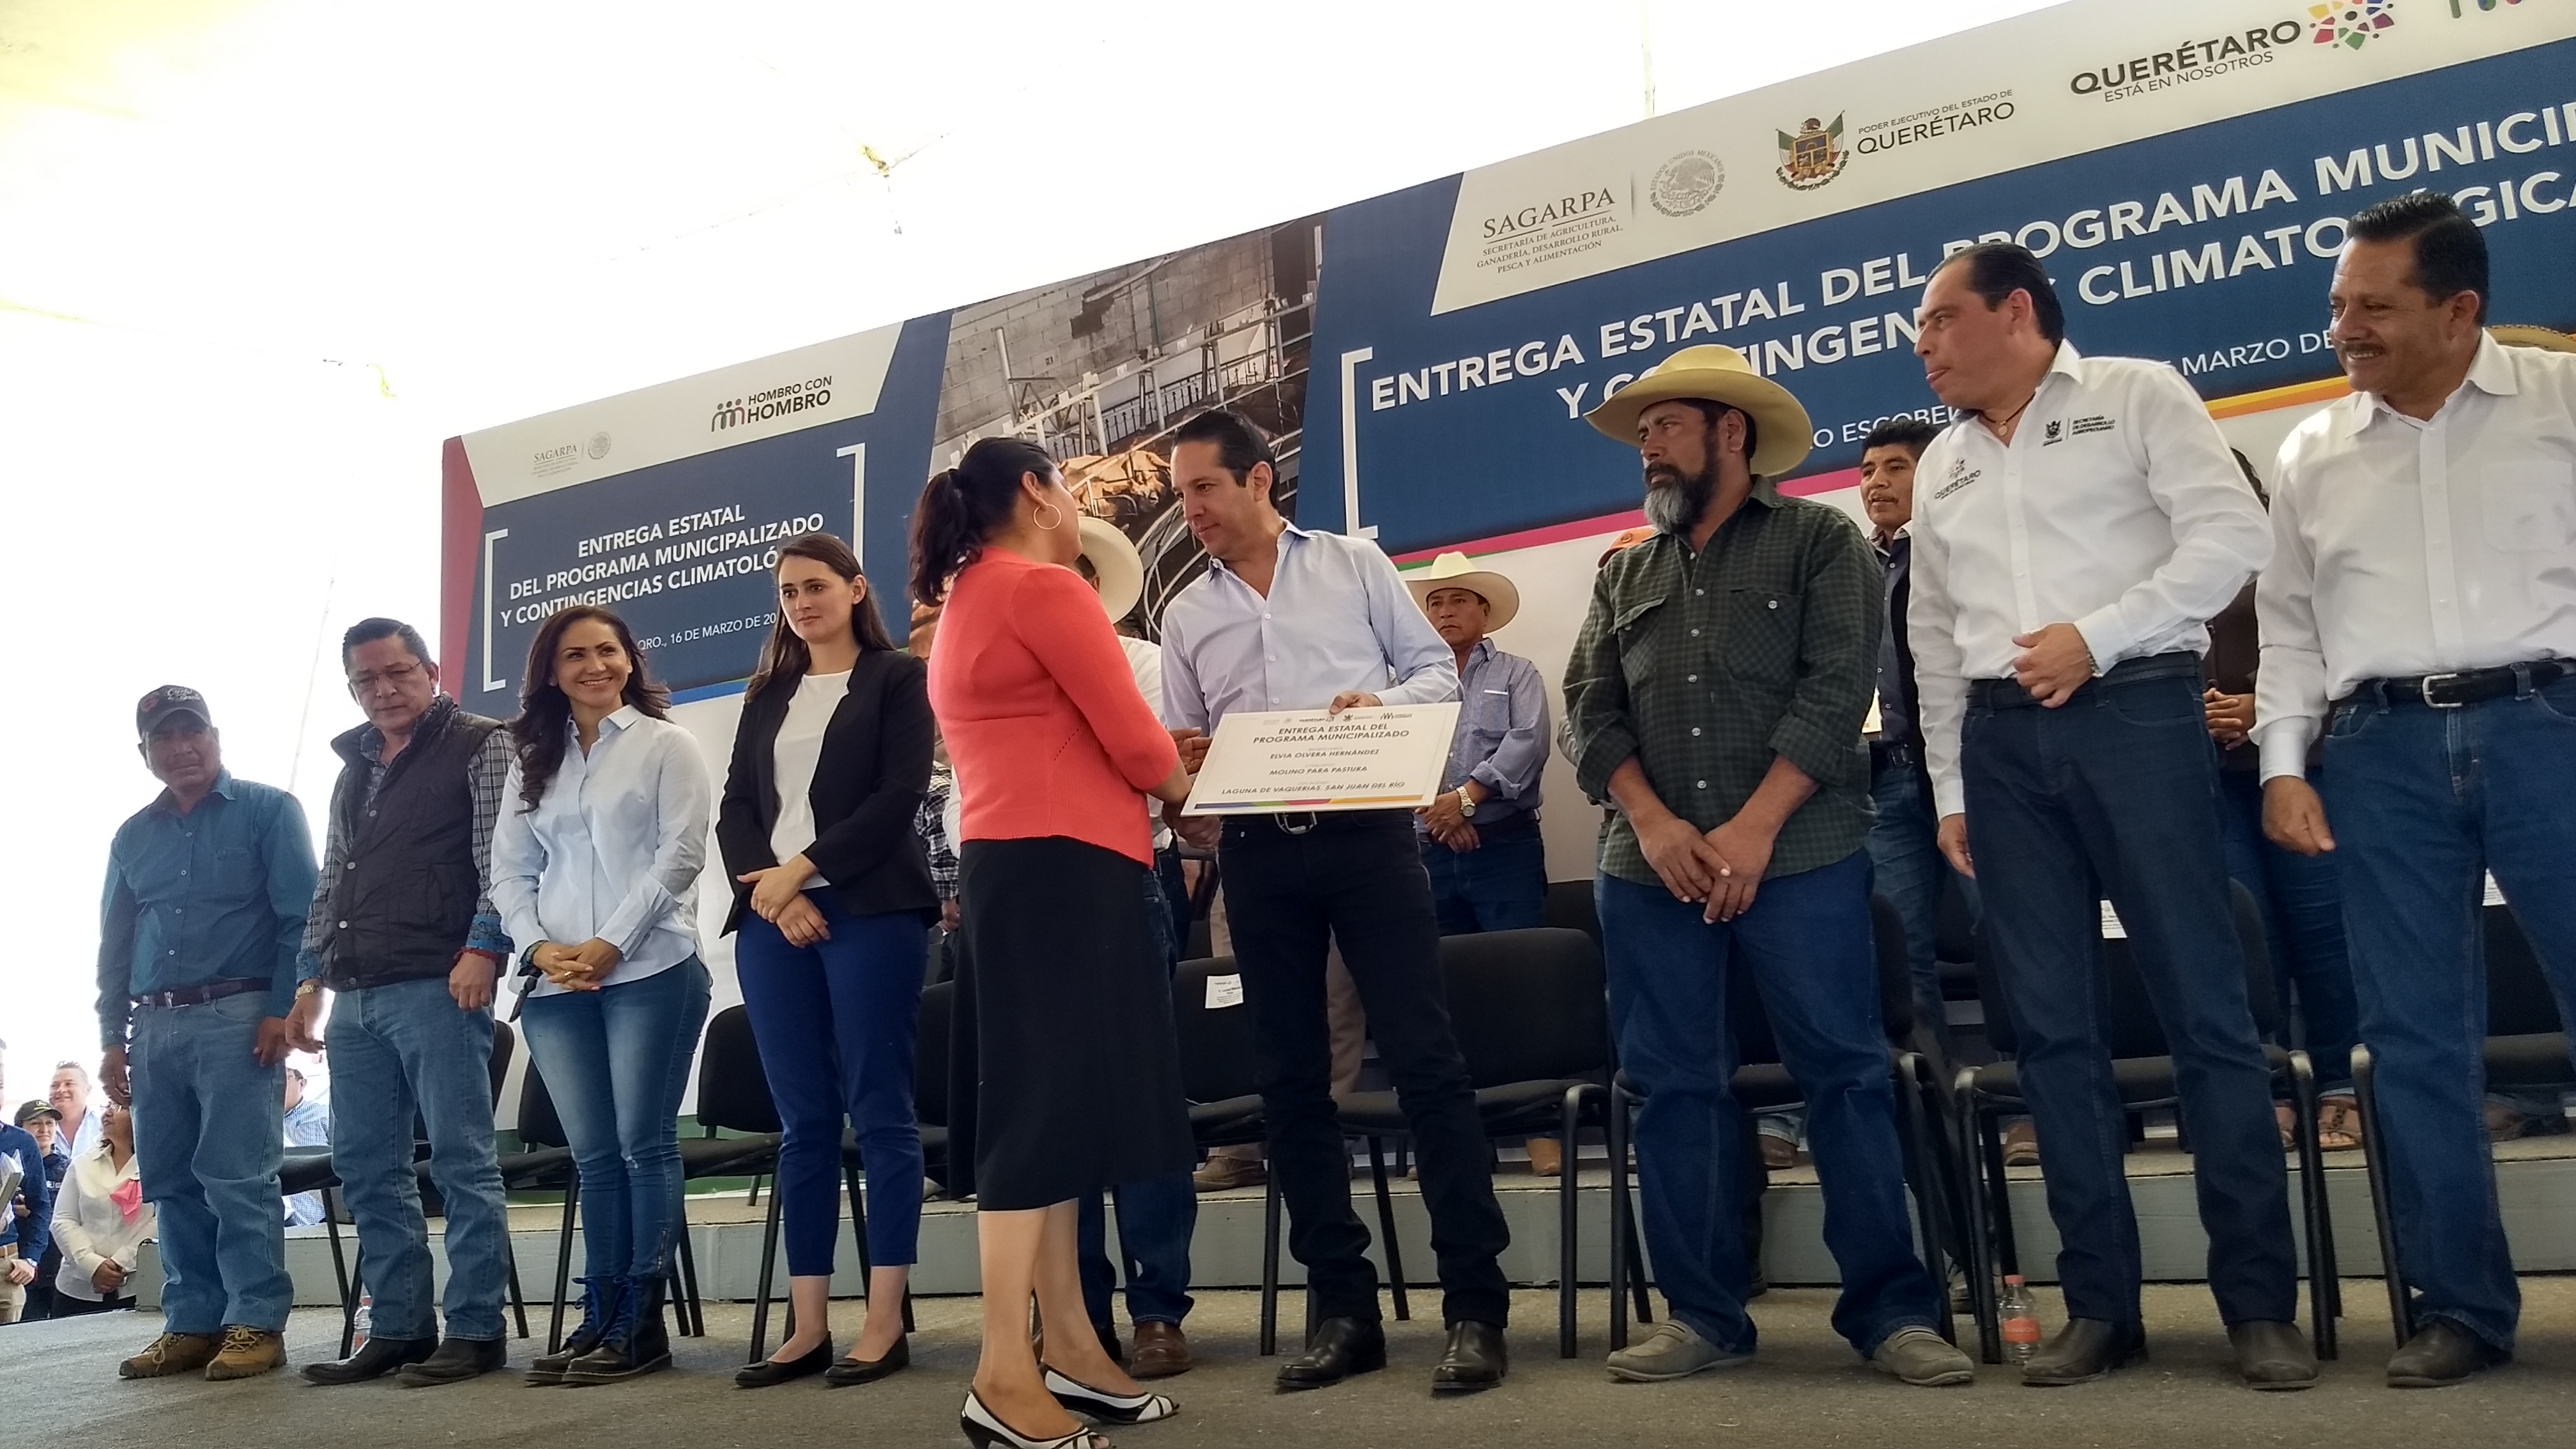  Total de 10 mil productores agropecuarios se beneficiaron en QuerA�taro con bolsa de 48 mdp